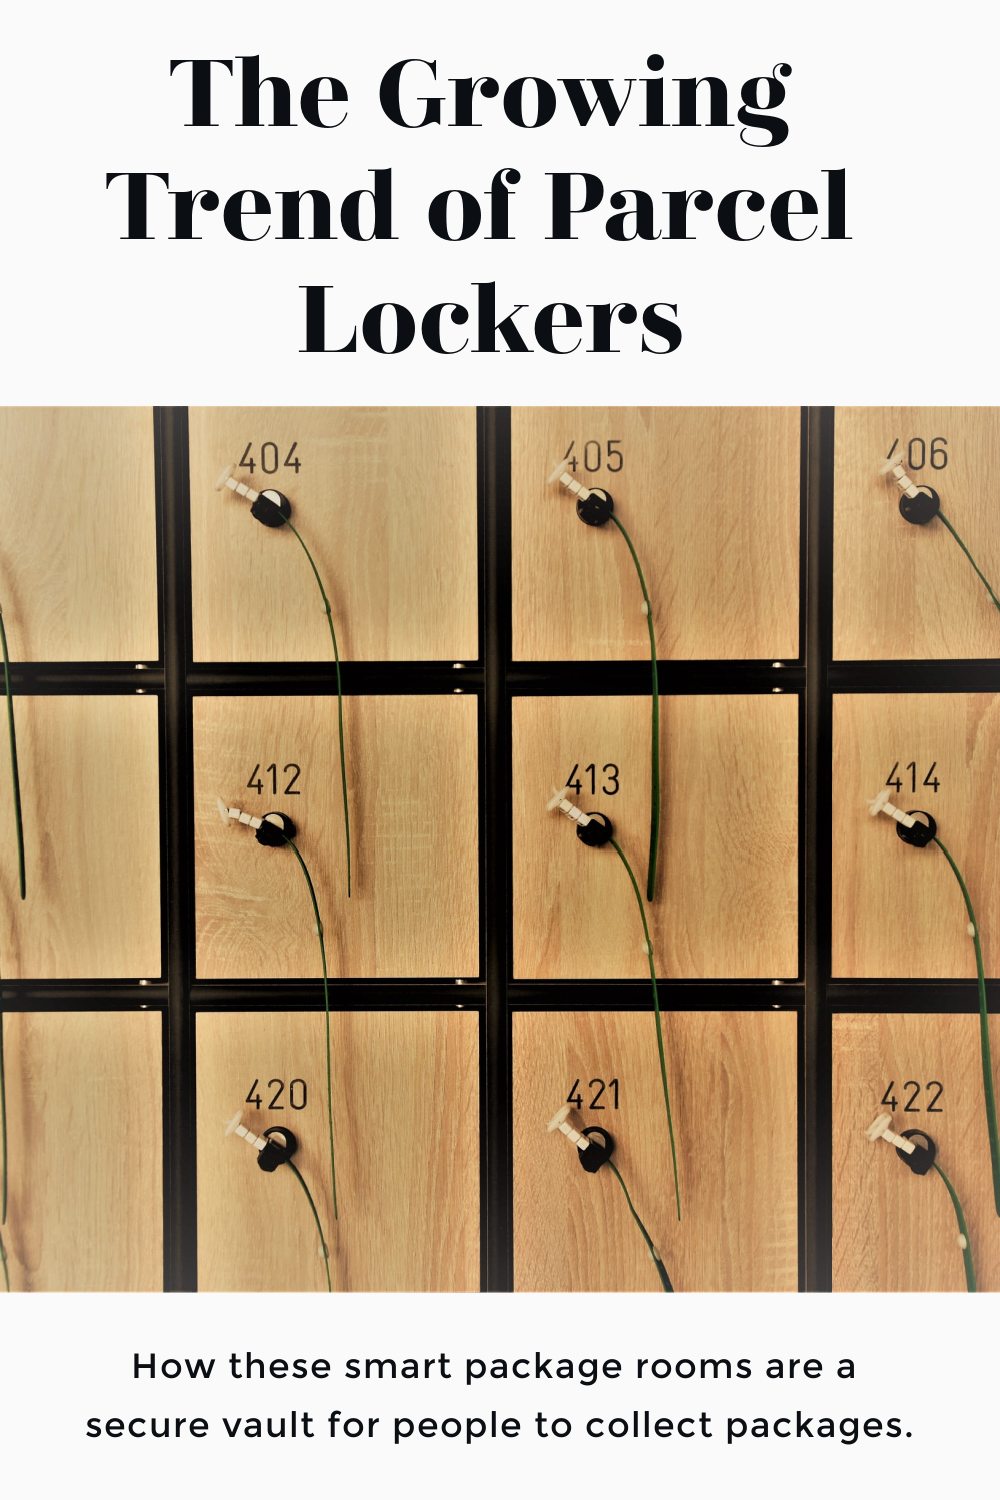 What is a Parcel Locker?